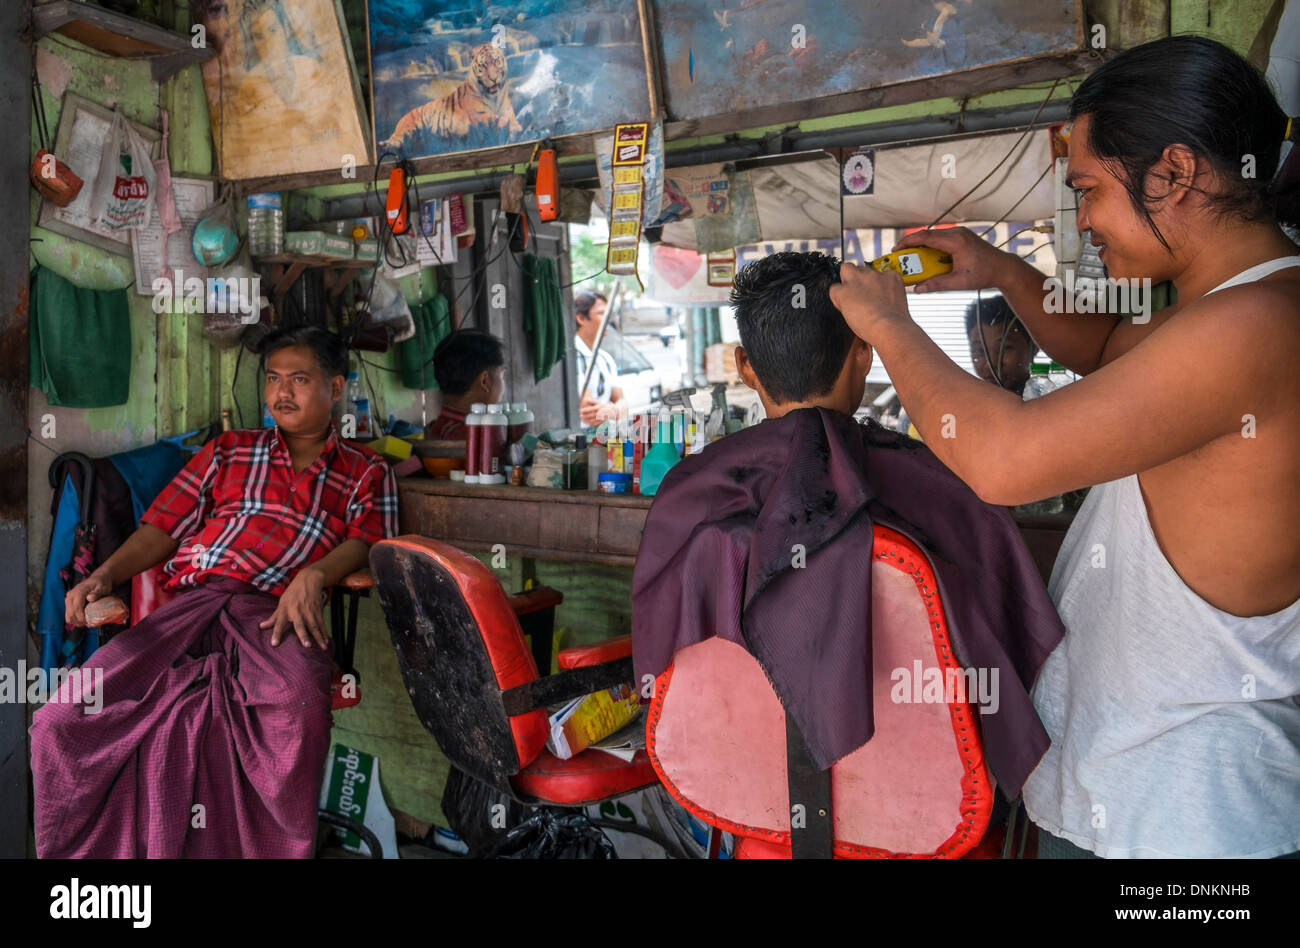 YANGON, MYANMAR - CIRCA DECEMBER 2013: Barbershop in the streets of Yangon. Stock Photo